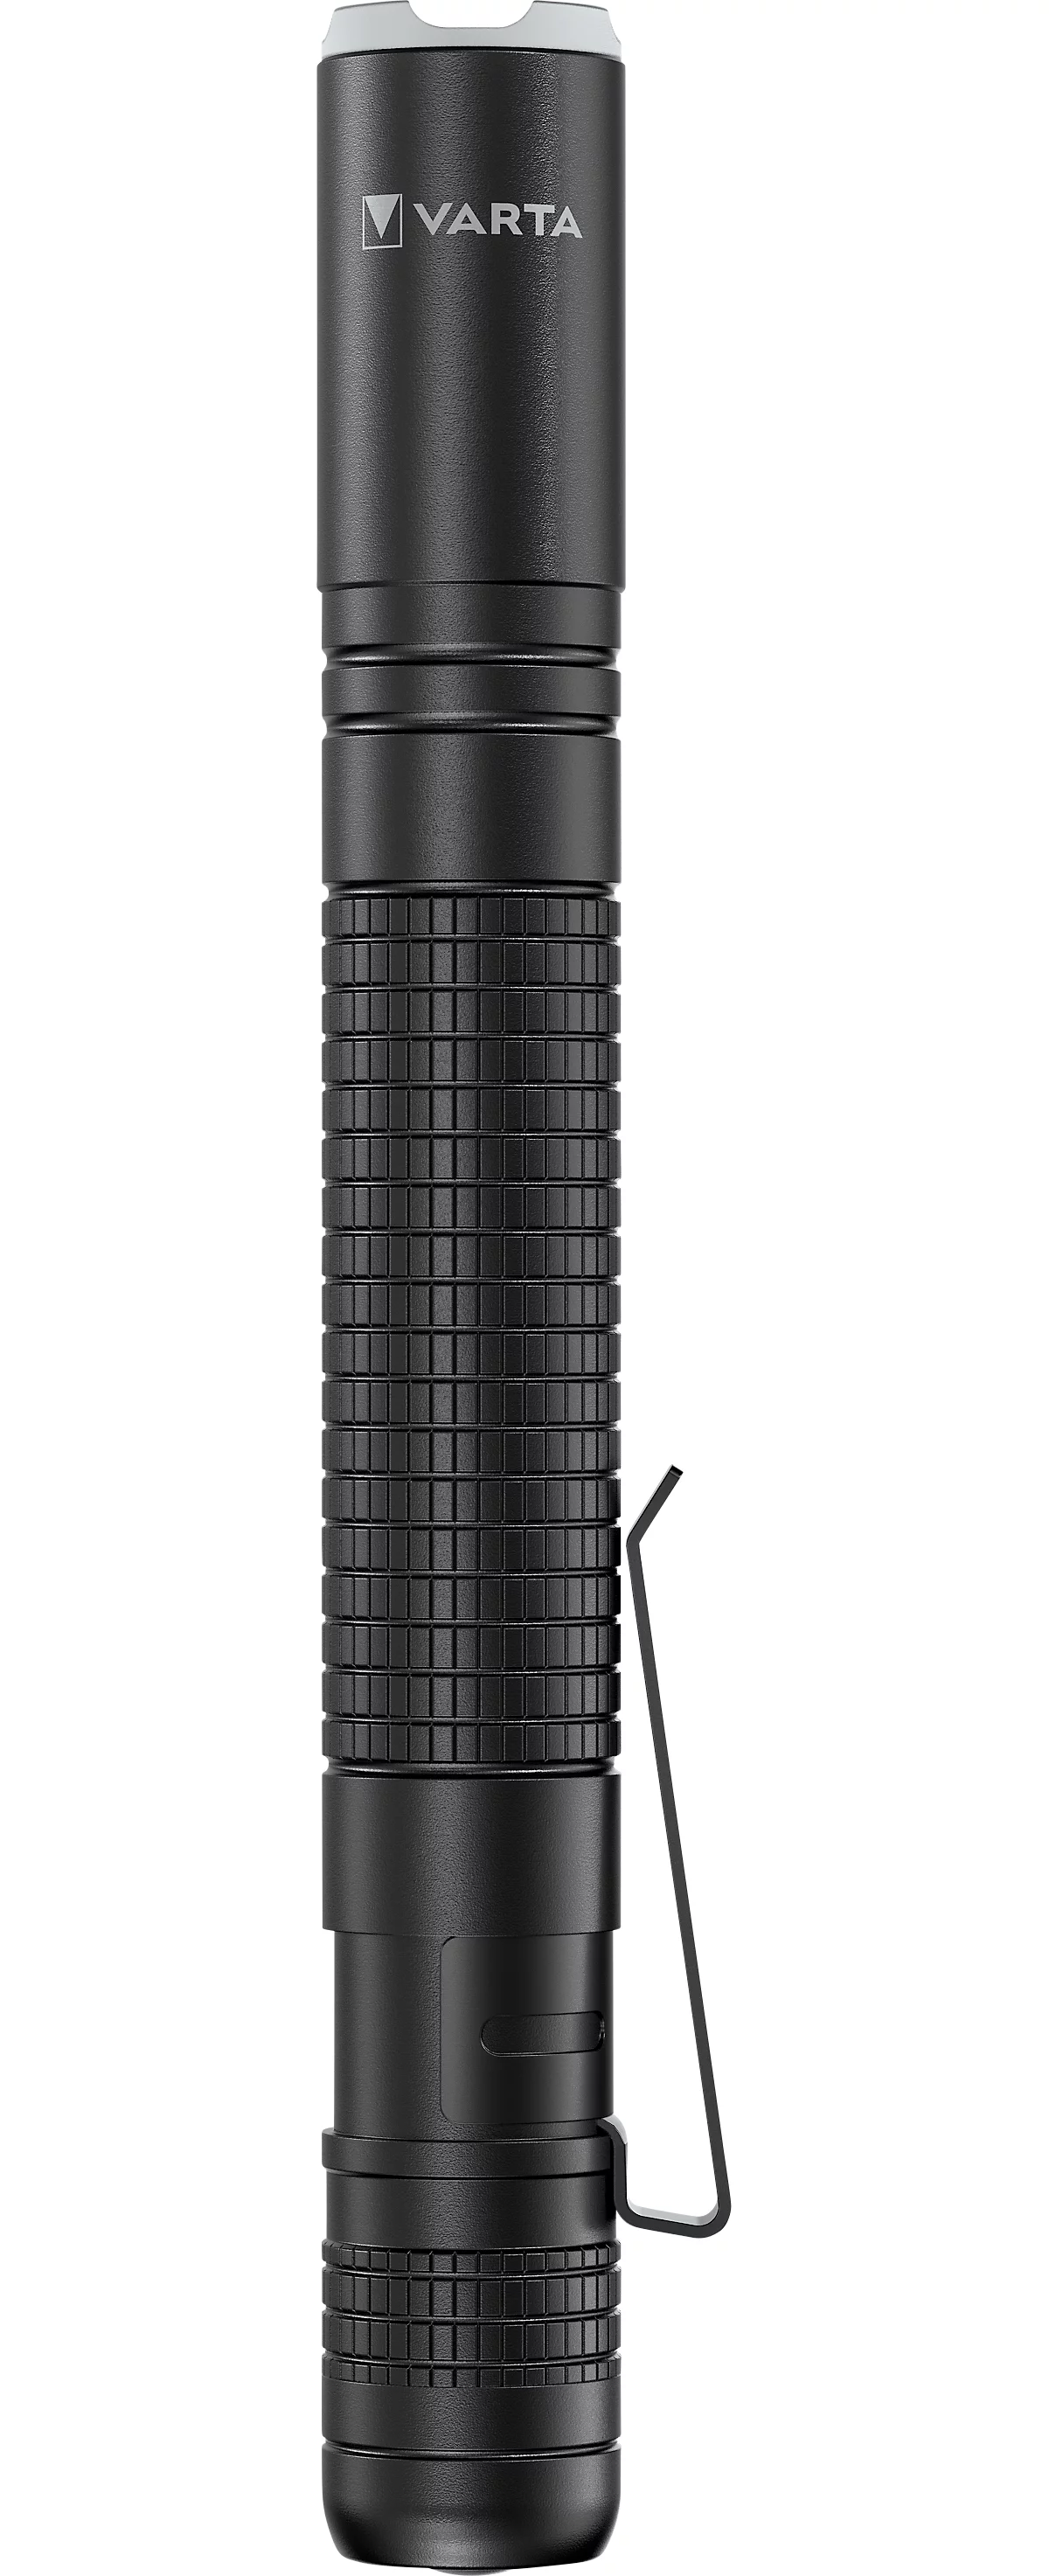 LED-Taschenlampe Varta Aluminium Light F10 Pro, 150 Lumen, 45 m Reichweite, bis zu 25 h, inkl. 2 AAA-Batterien, ⌀ 20 x H 133 mm, schwarz